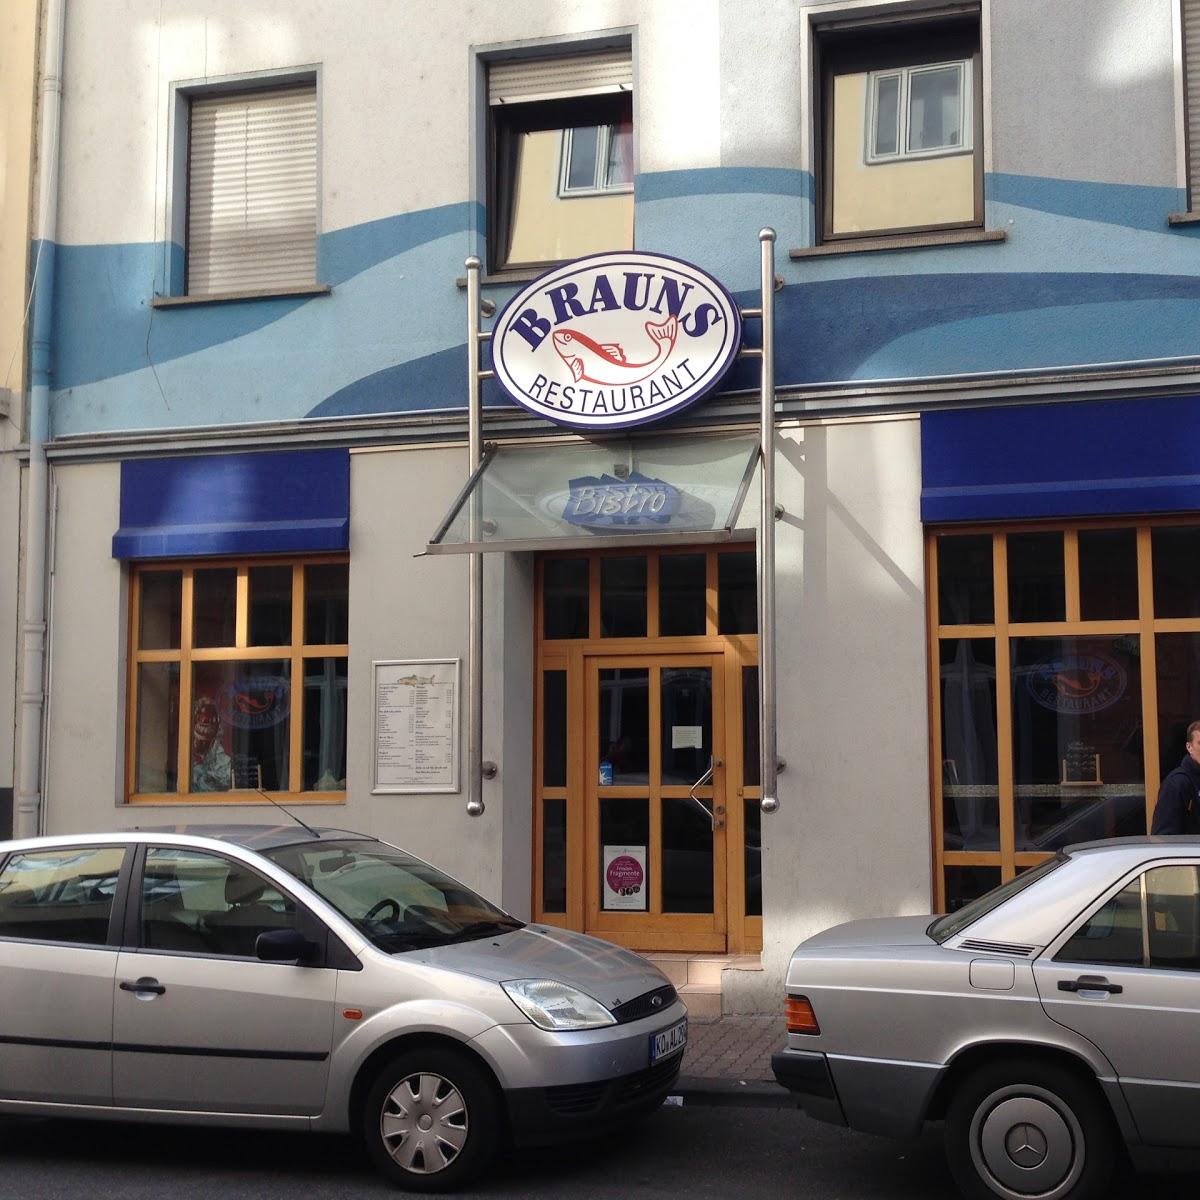 Restaurant "Brauns" in Koblenz